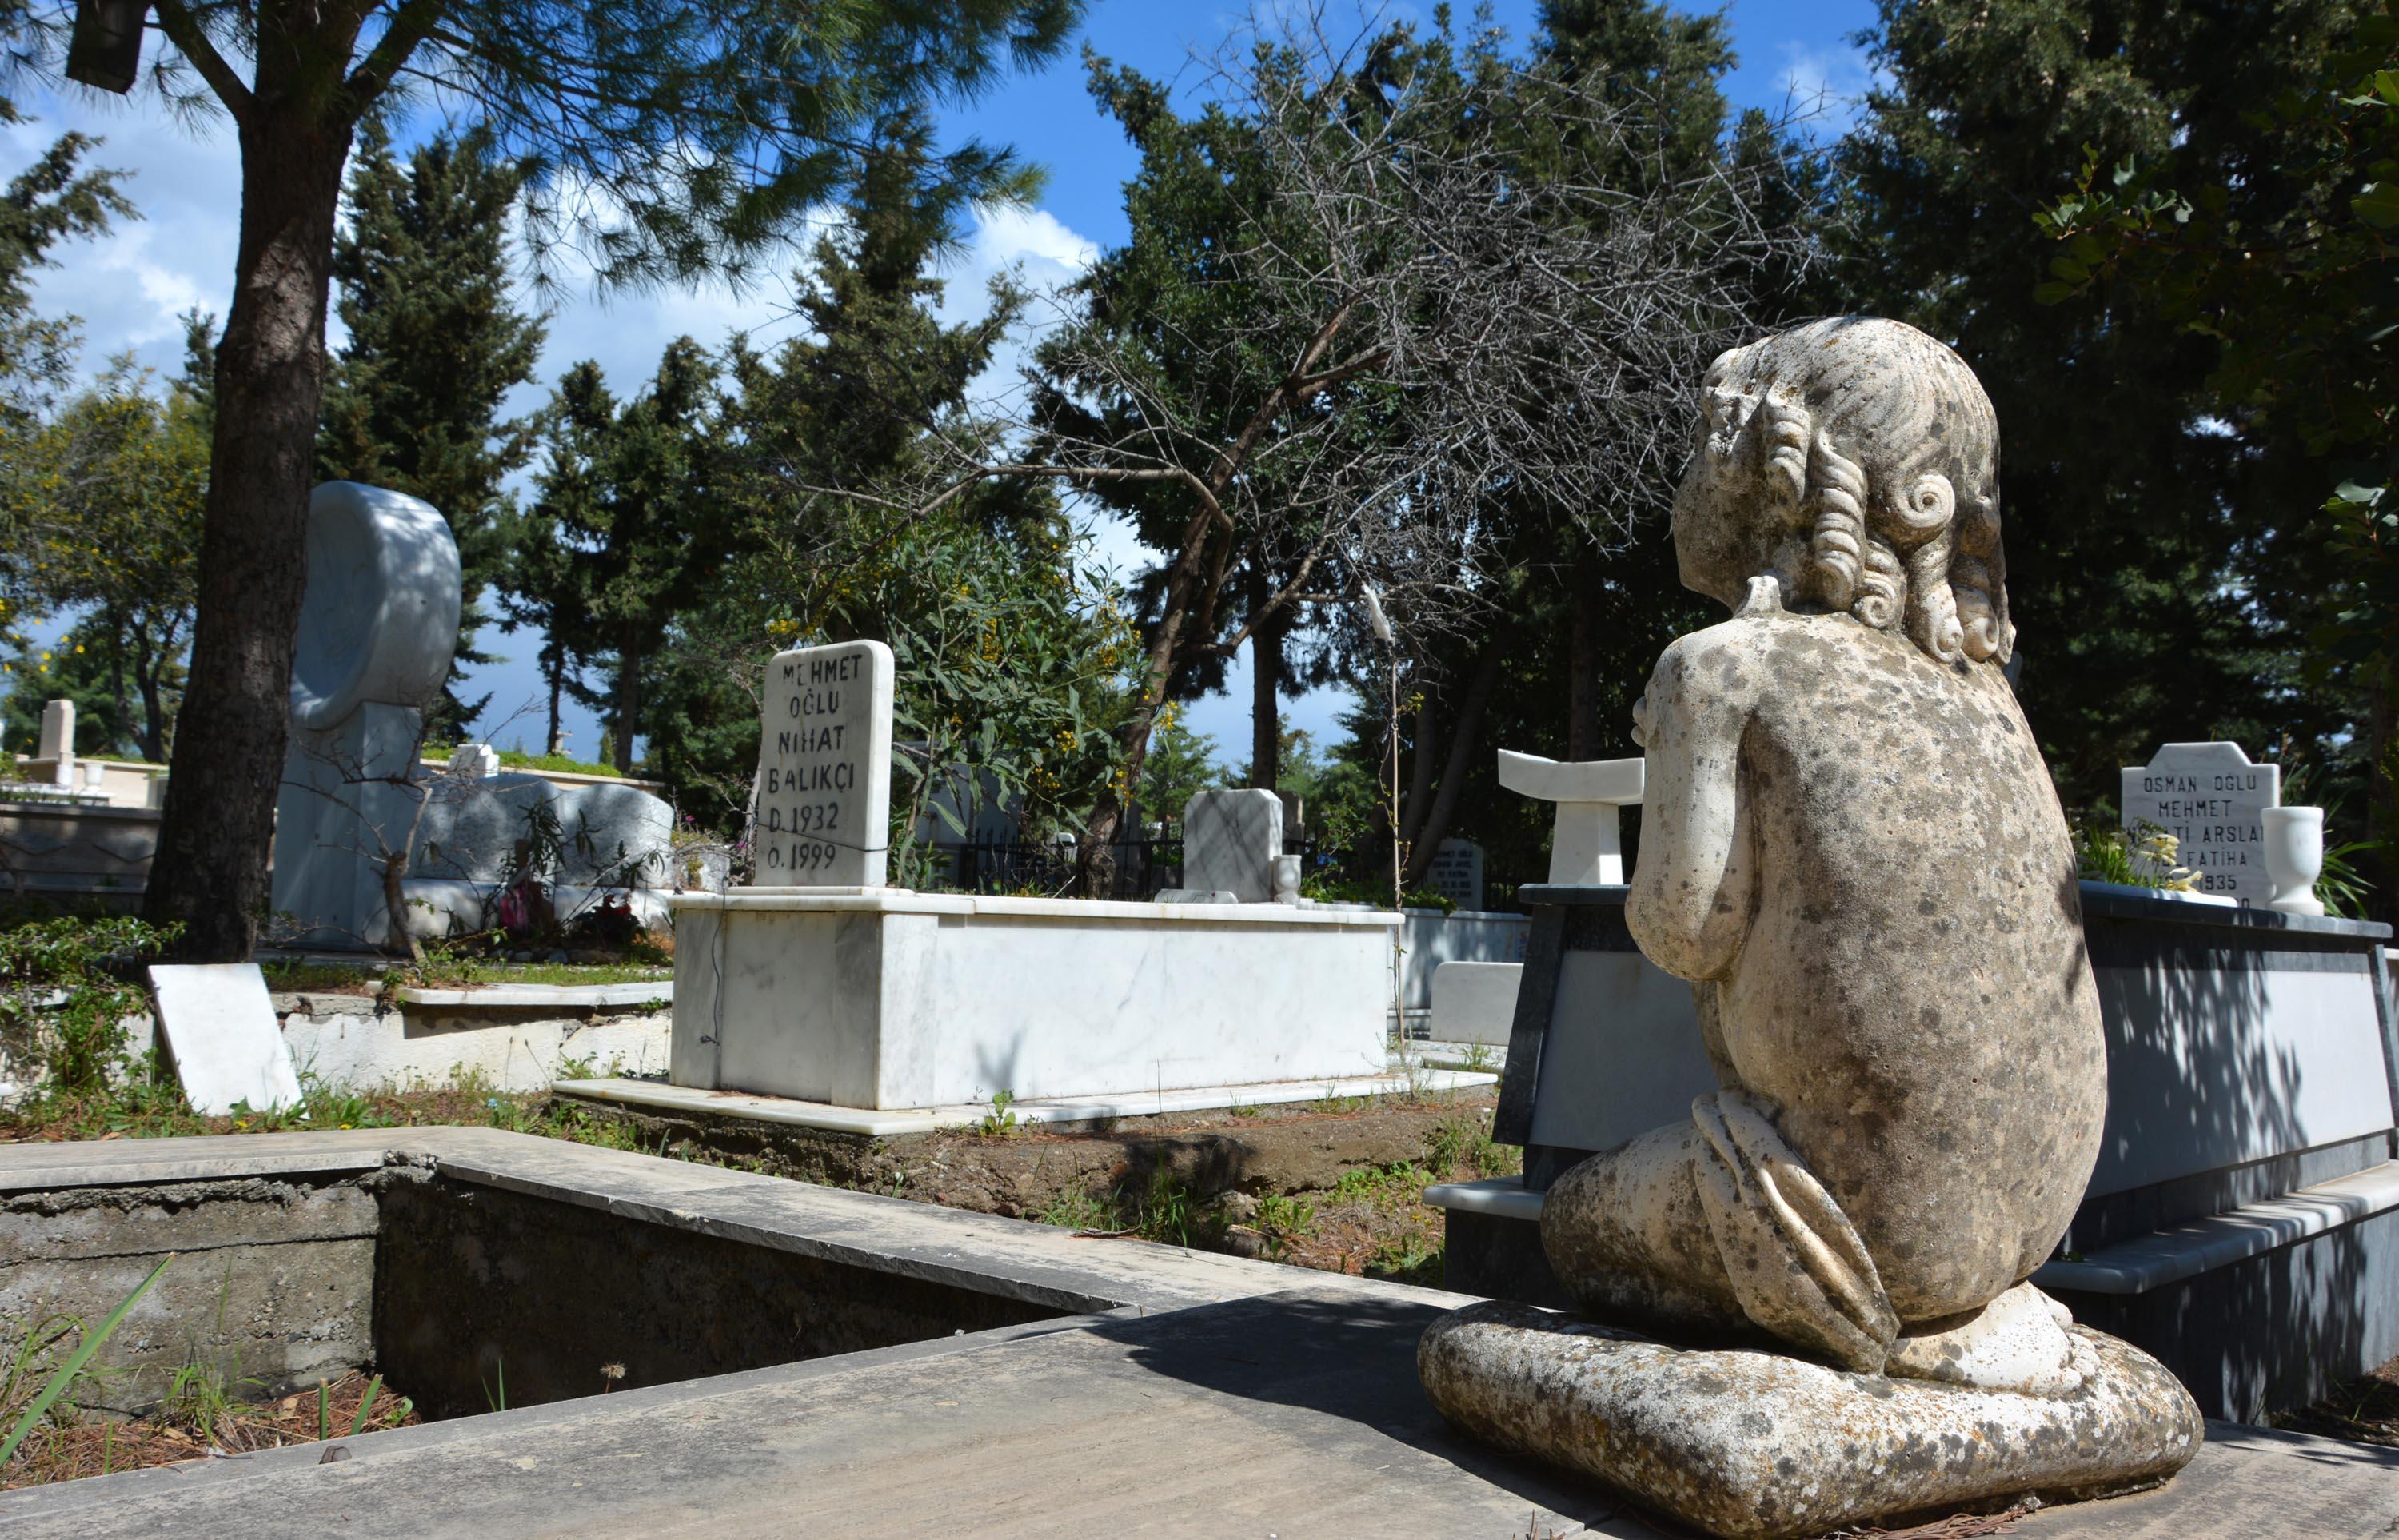 Datçanın hoşgörü mezarlığında farklı dinlerden insanlar yan yana yatıyor